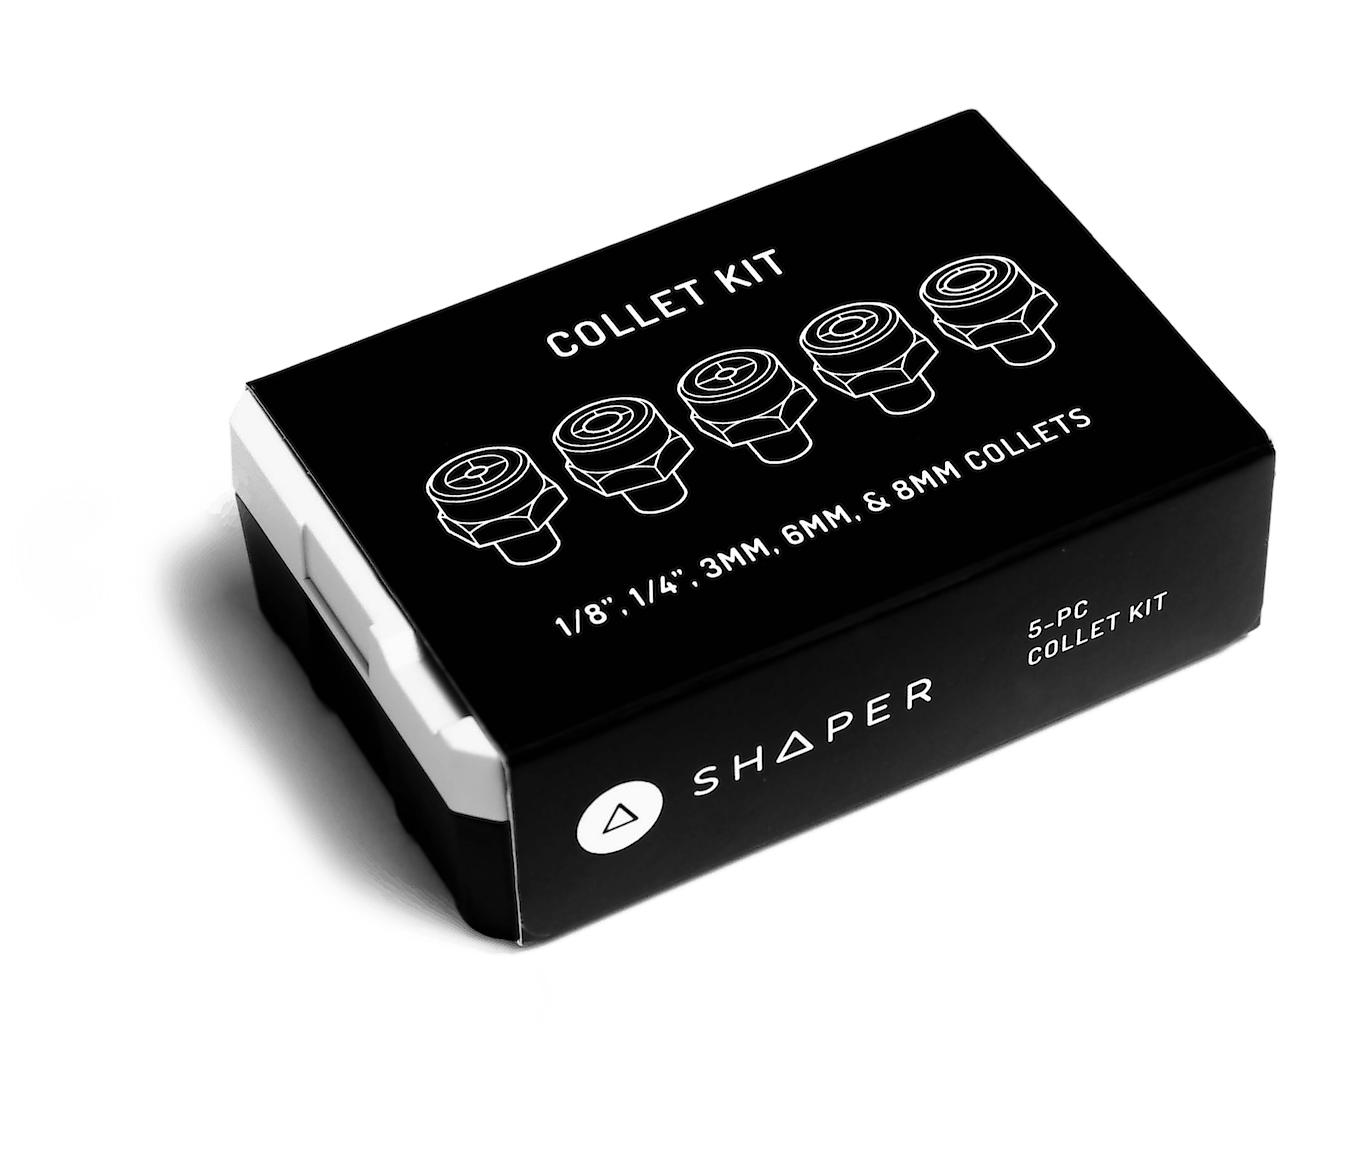 Shaper Origin Gen 2 - 1.25 Hose Adapter by GarageMonkeySan